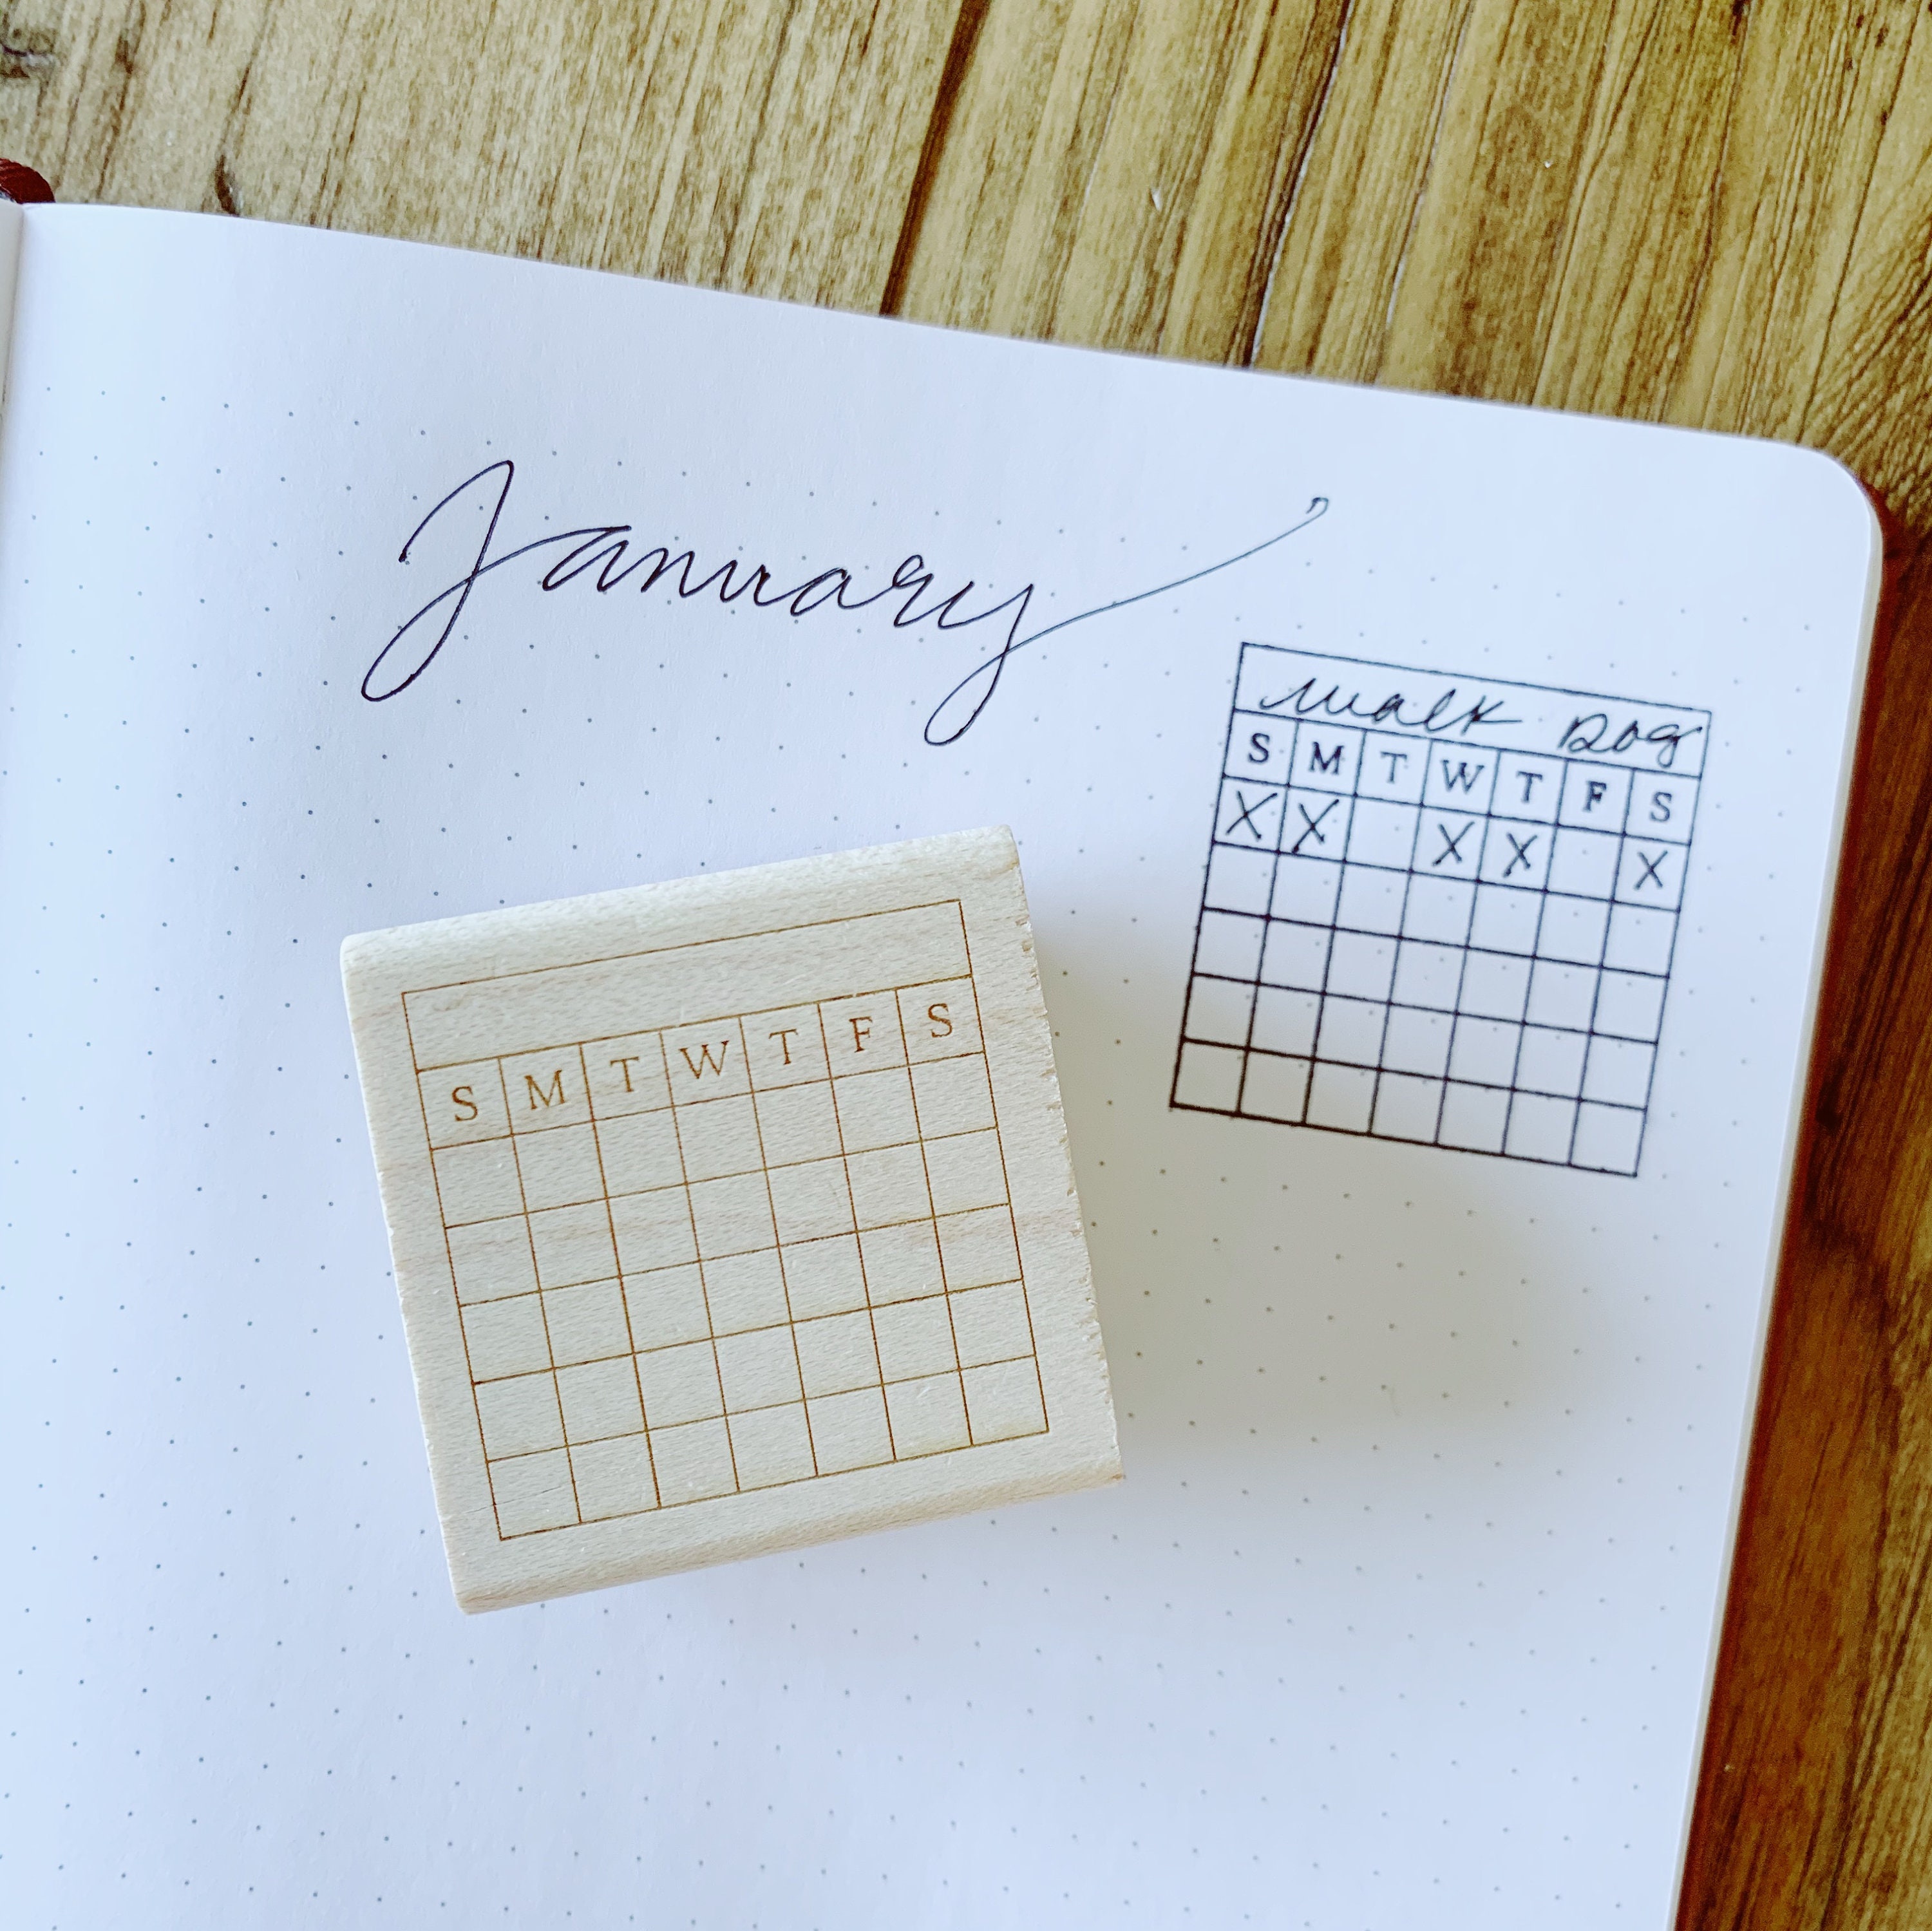 Bullet Journal 5 Row Calendar Rubber Stamp 1.75 x 2.5 block